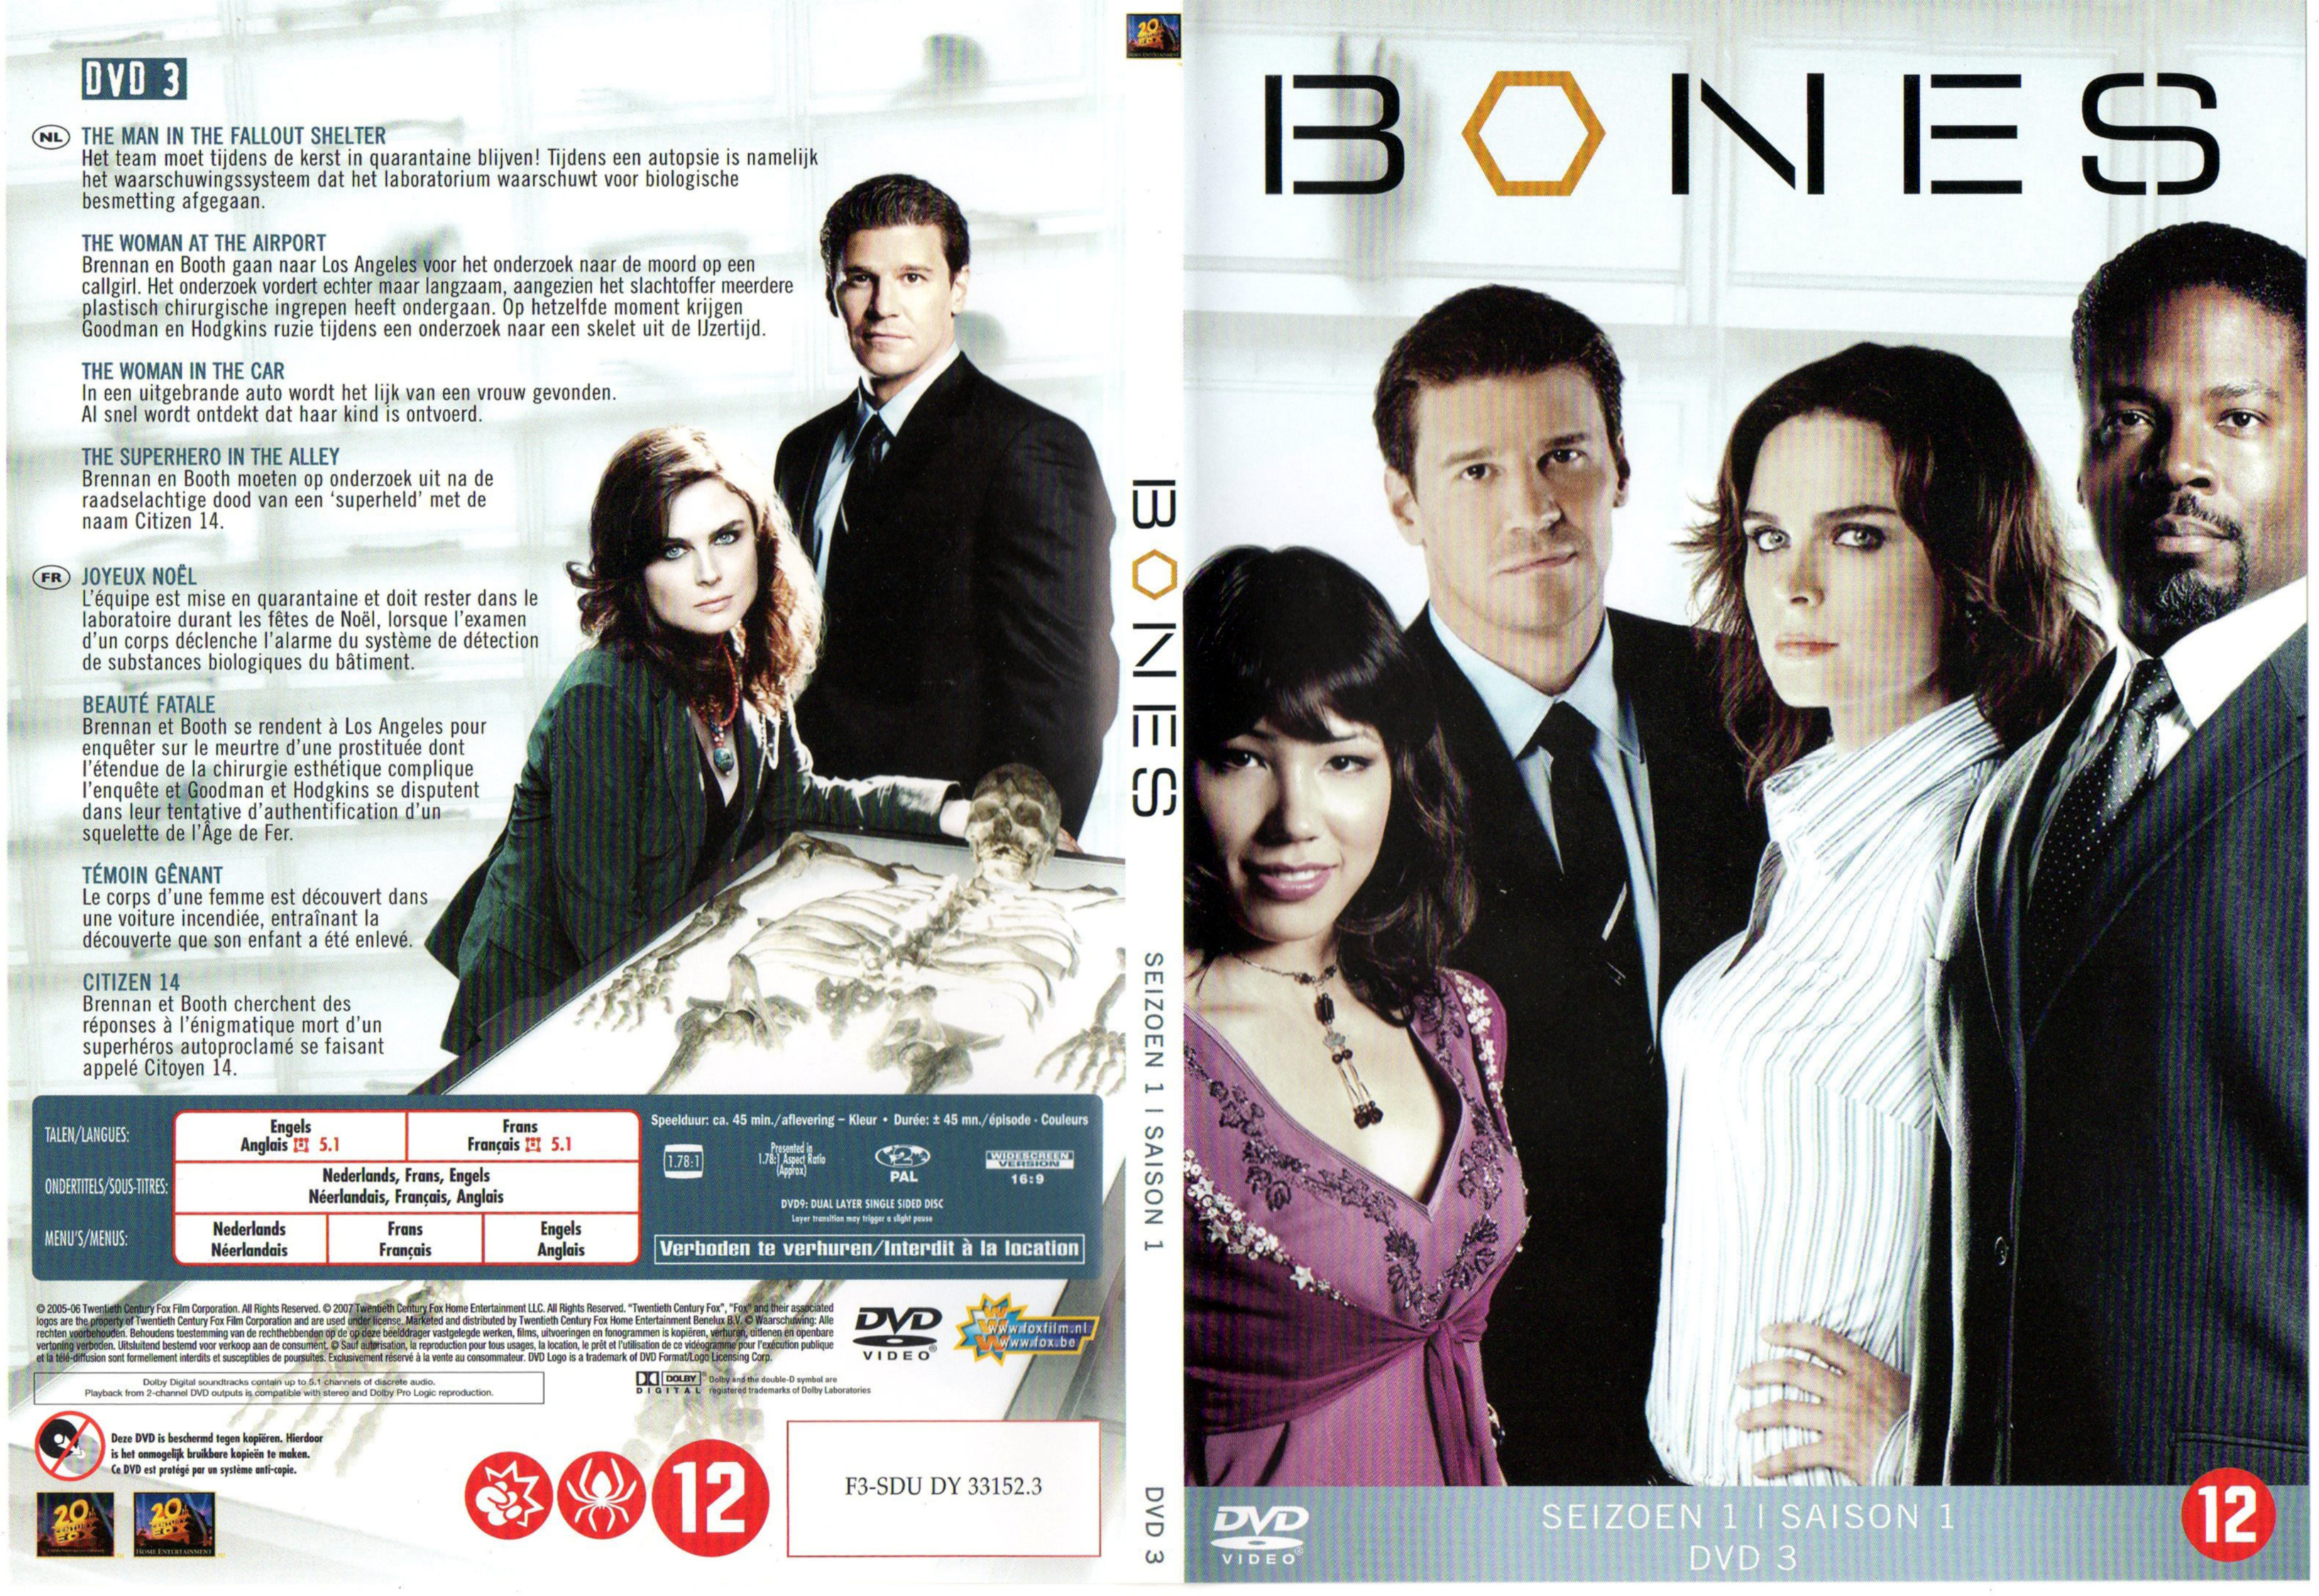 Jaquette DVD Bones Saison 1 DVD 3 v2